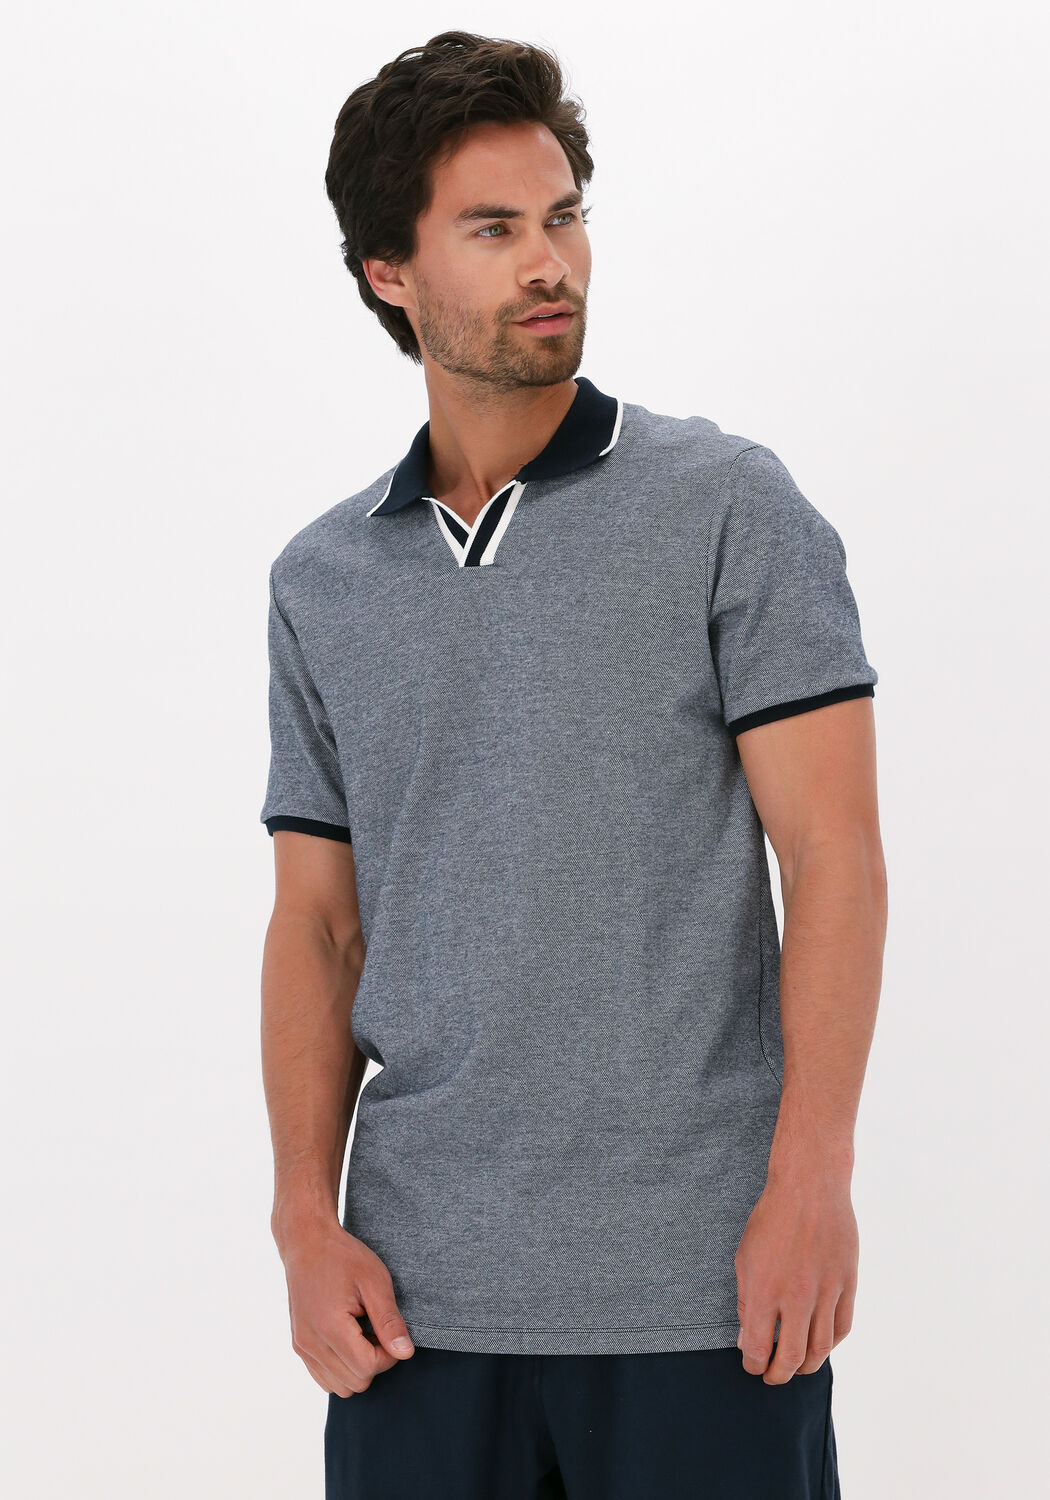 T-shirt Polo S/s Gaze Knit Dstrezzed pour homme Homme Vêtements T-shirts Polos 